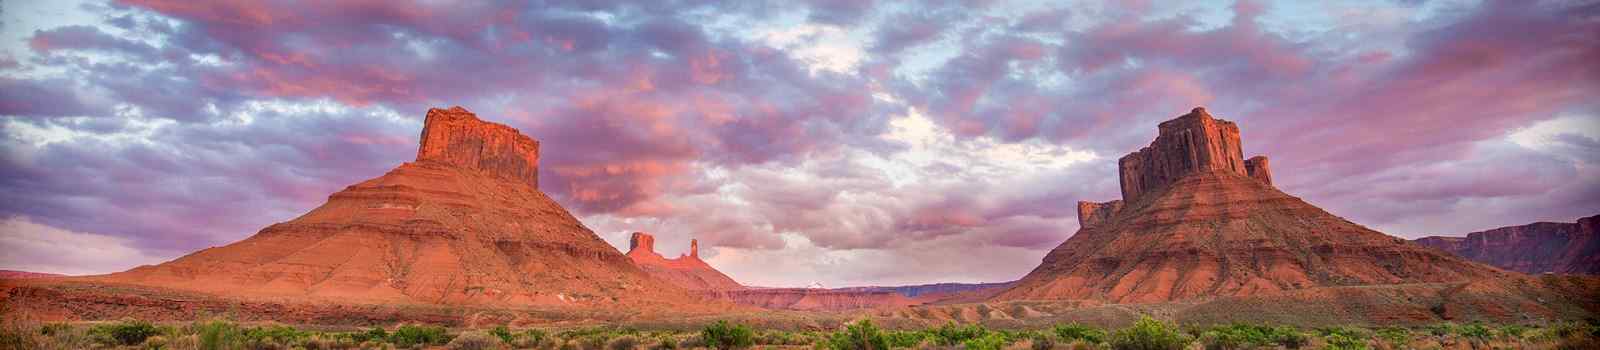 SORREL-RIVER-RANCHE -sunset-moab